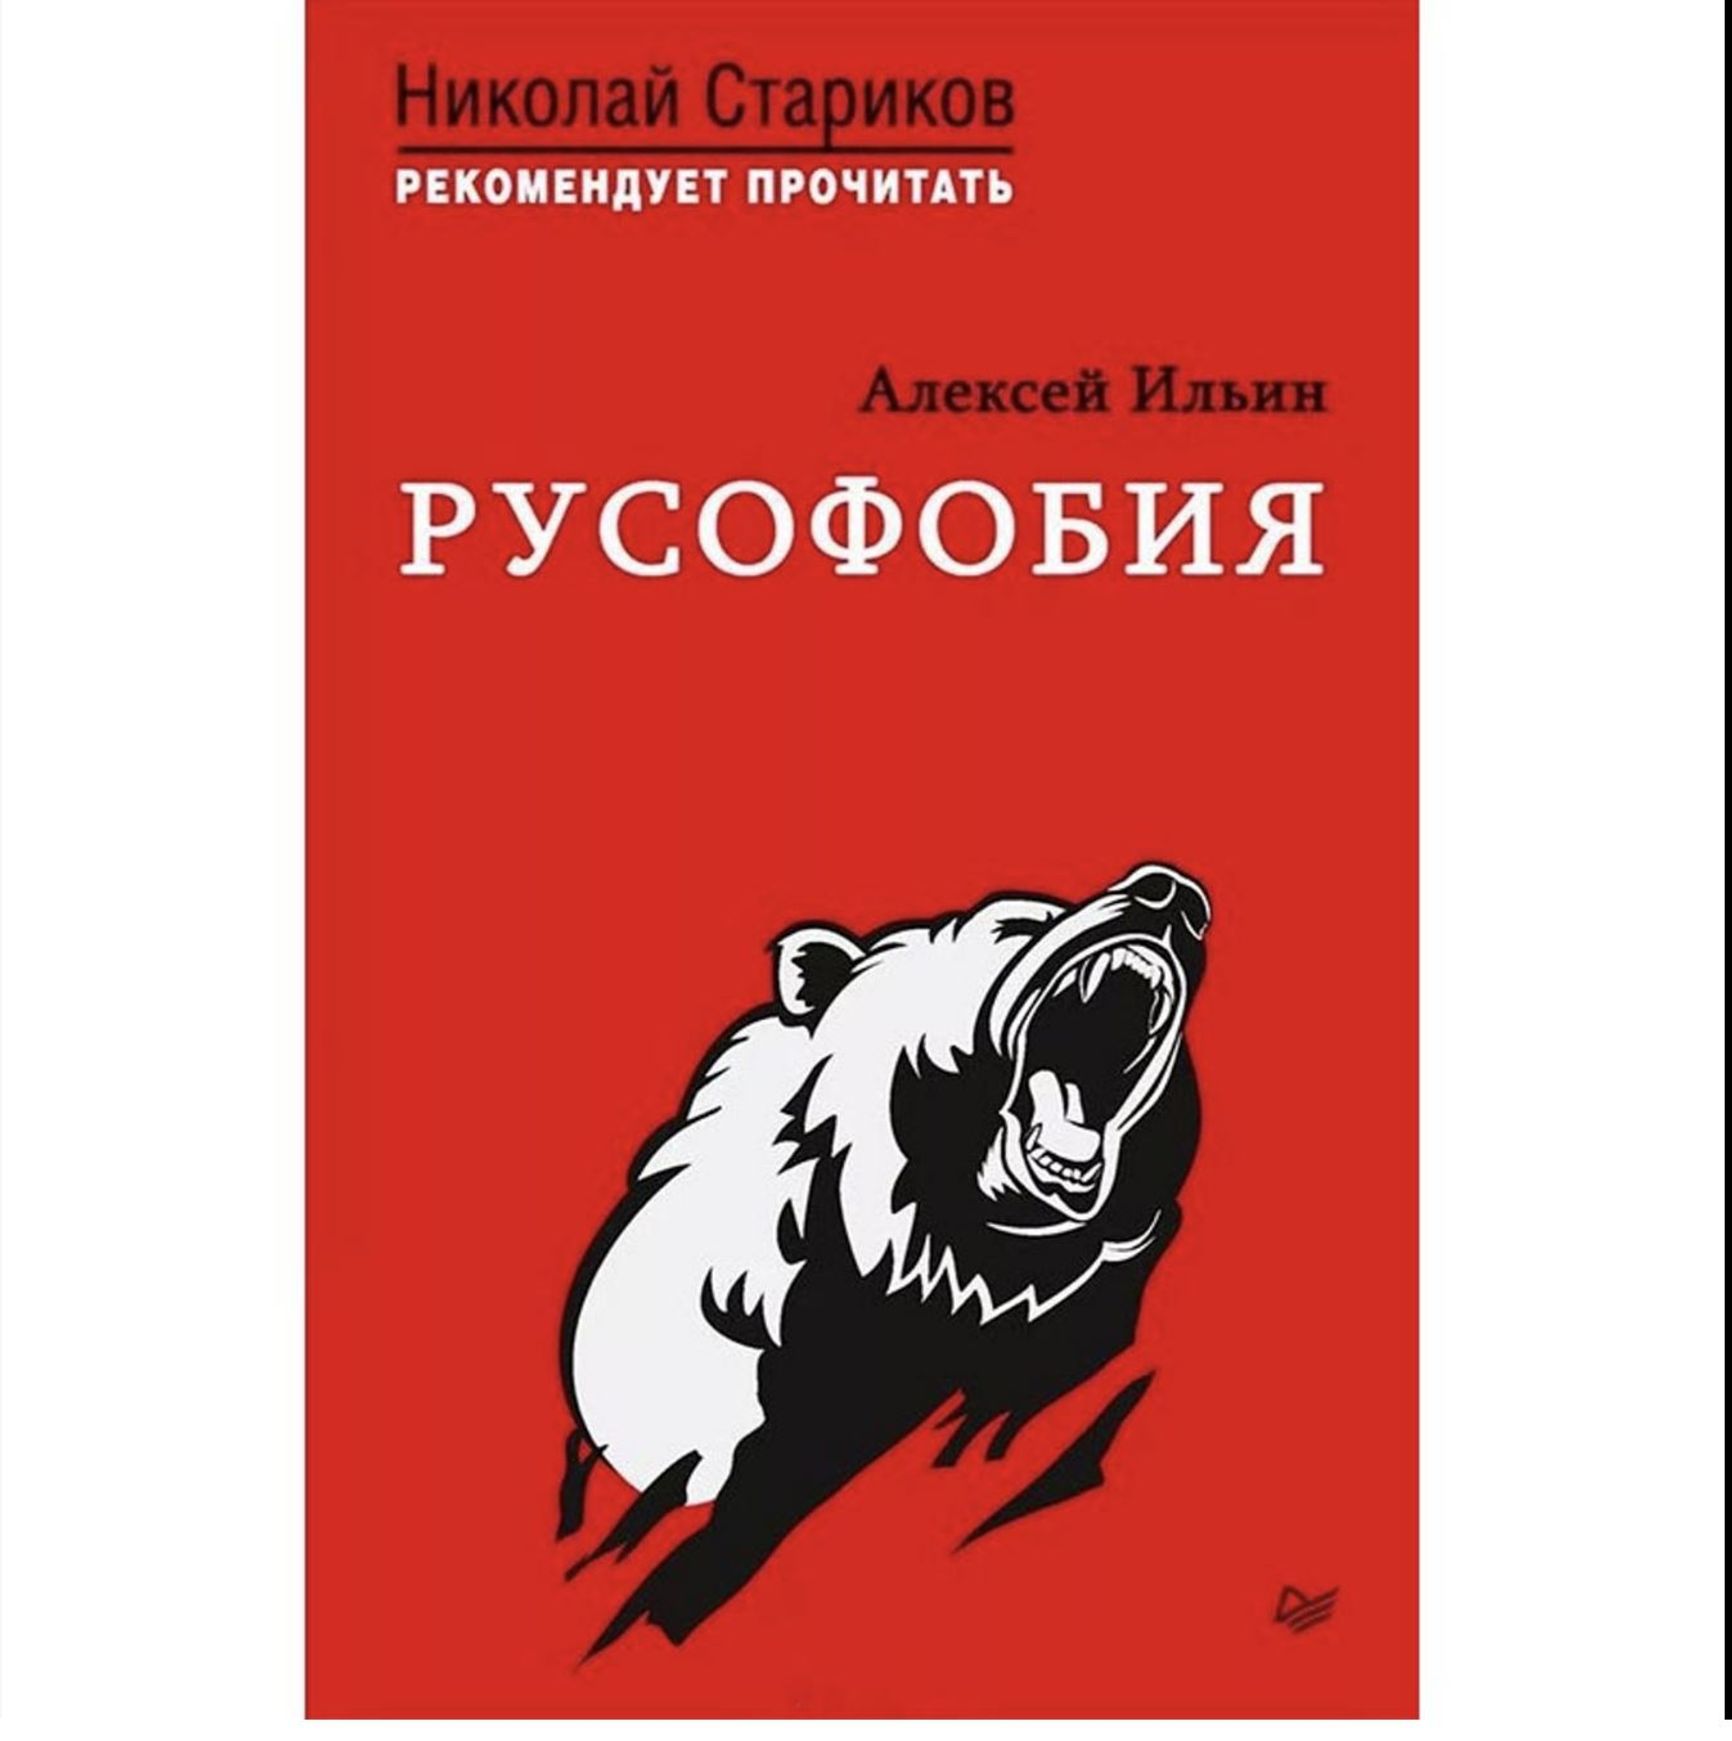 Alexei Ilyin's book